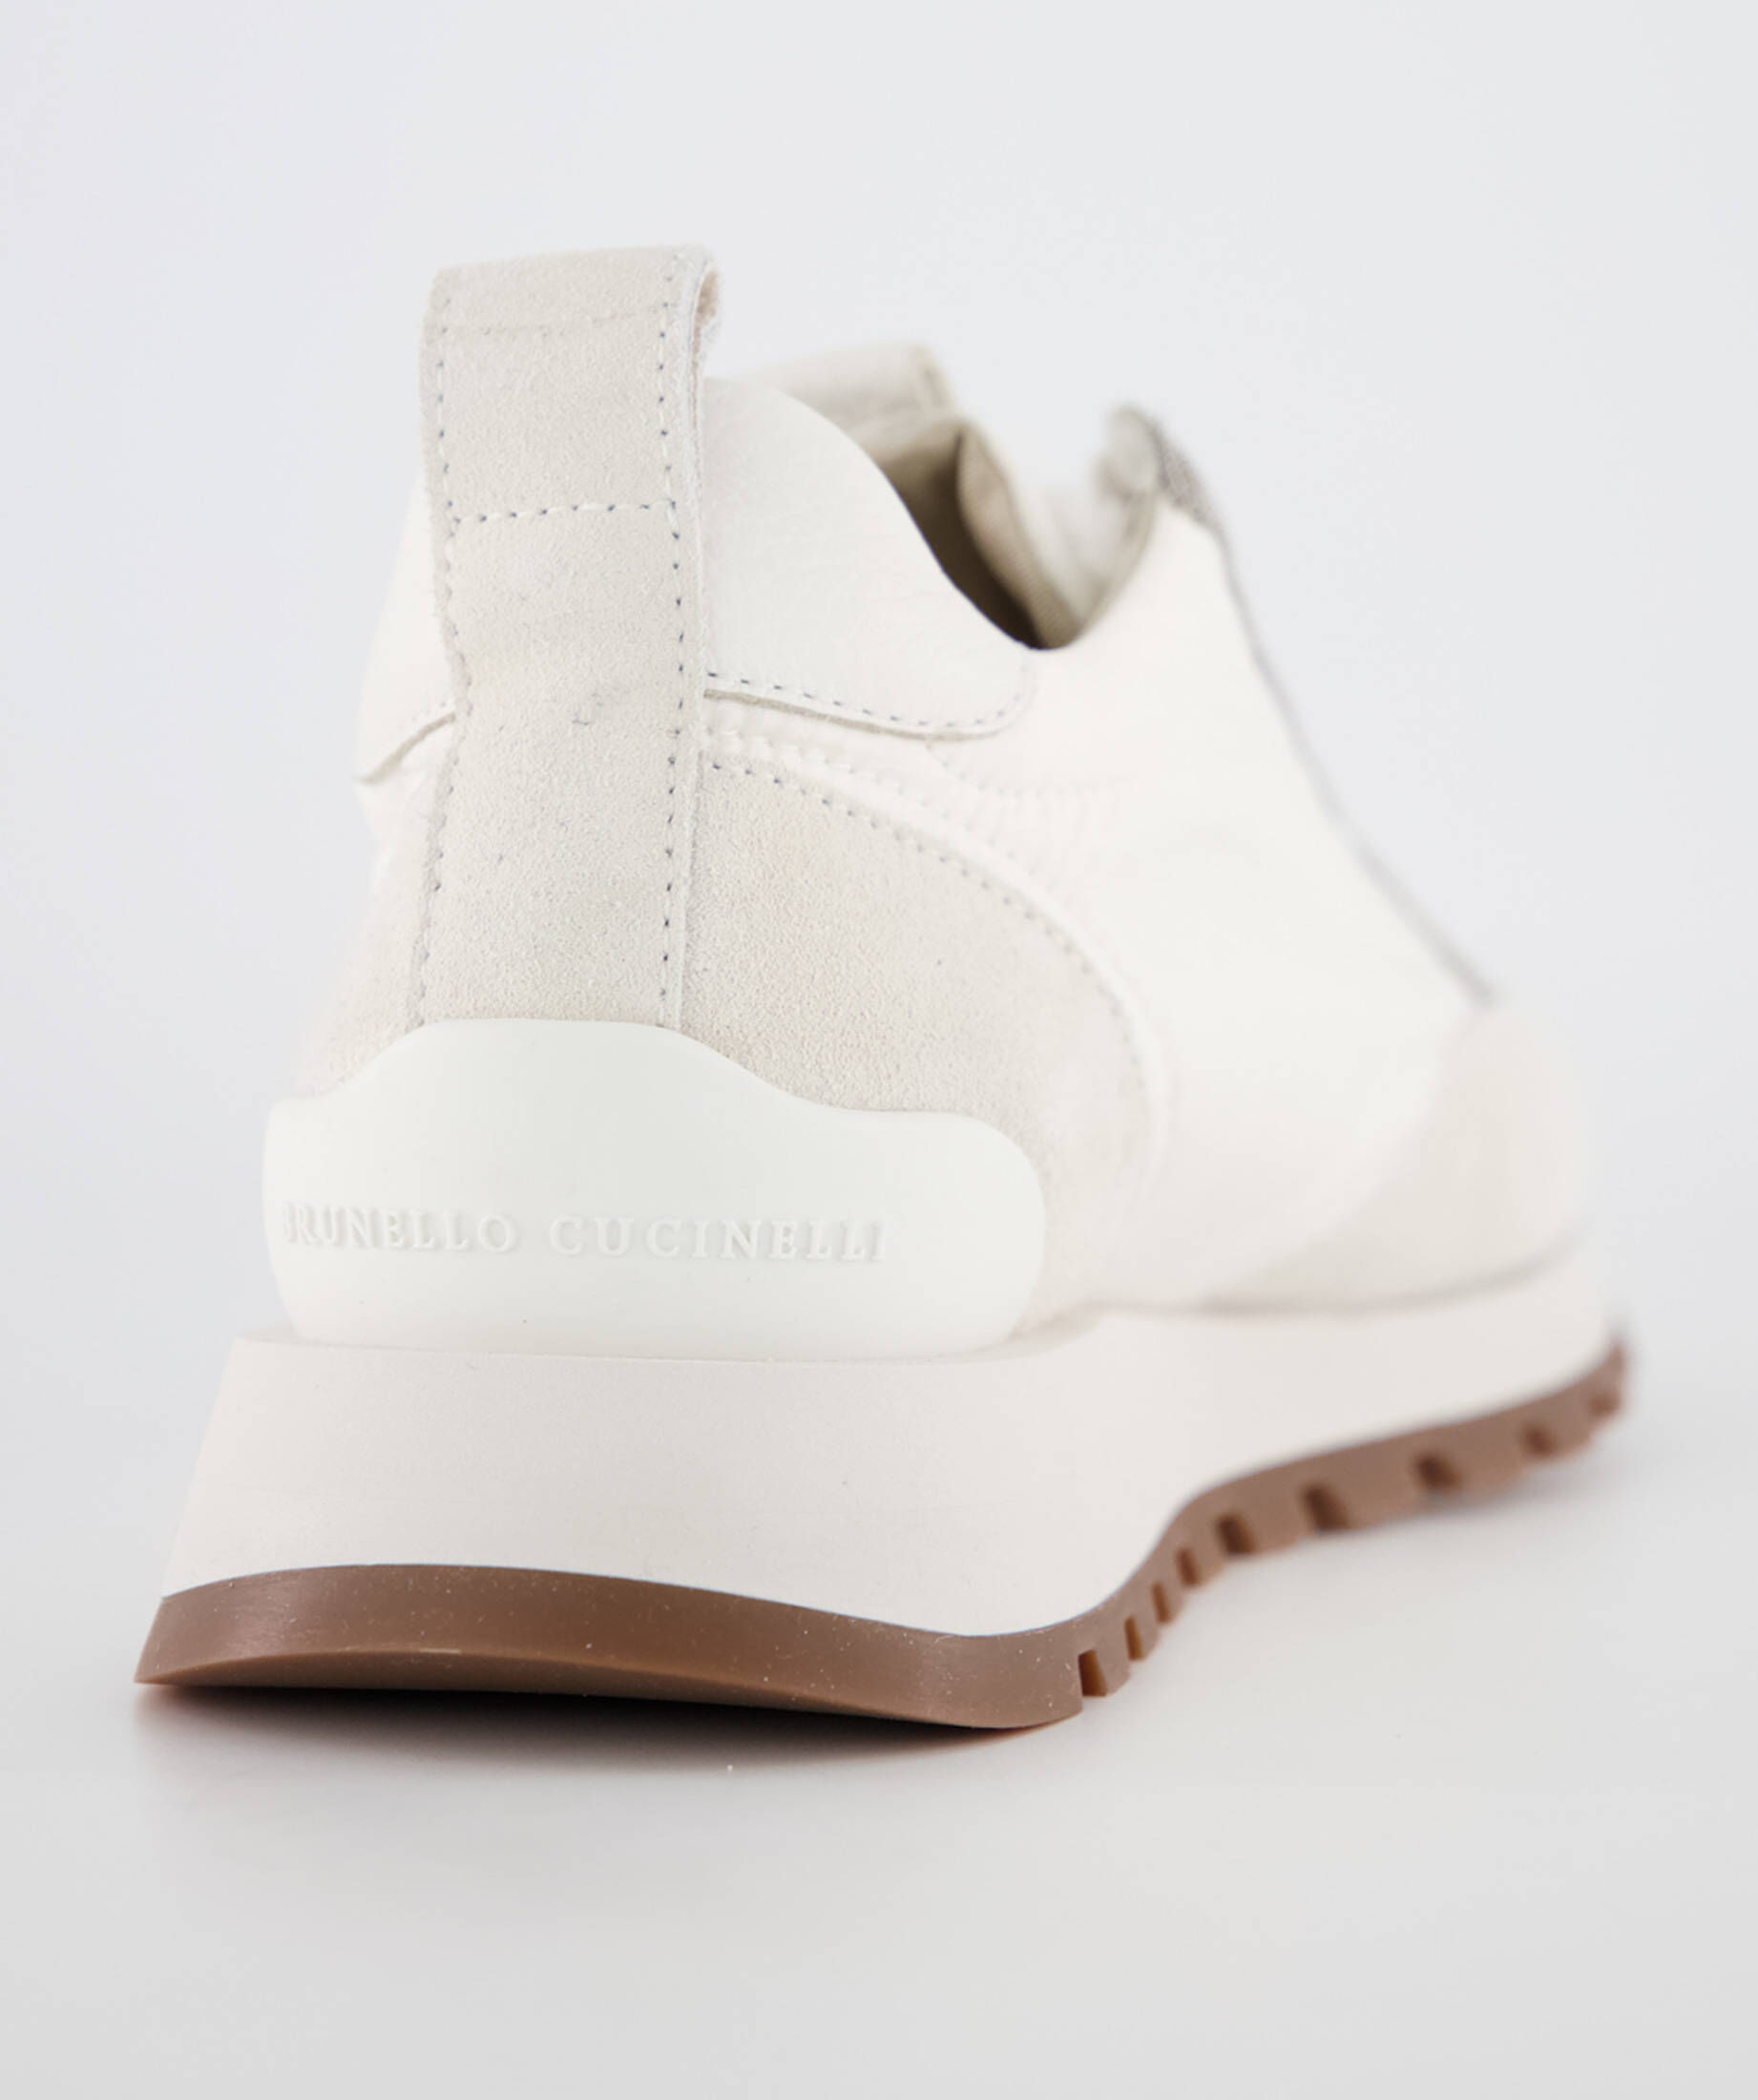 Brunello Cucinelli Sneaker Weiß in Weiß Damen Schuhe Sneaker Niedrig Geschnittene Sneaker 